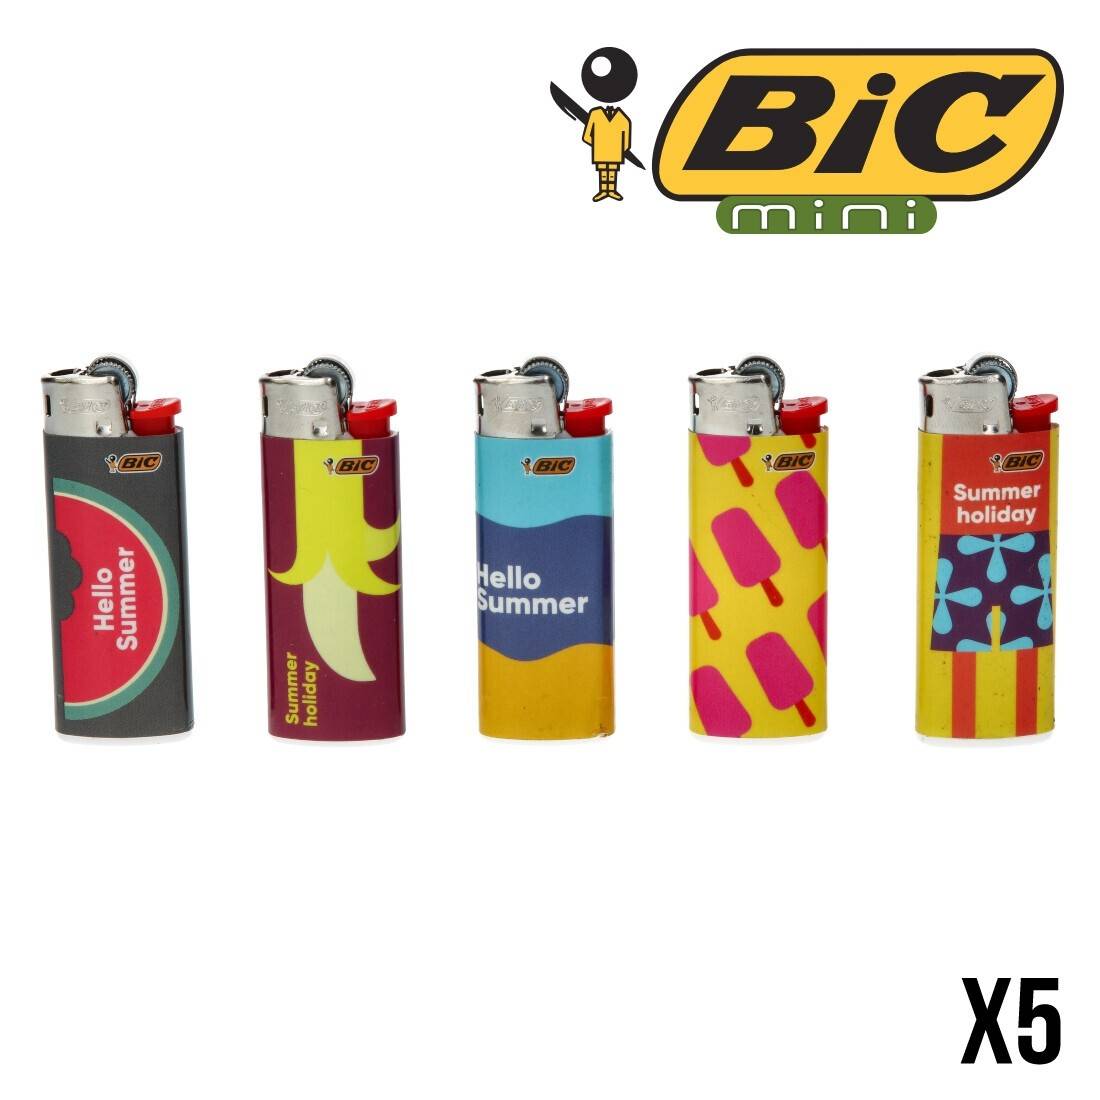 Briquet Bic mini standard coloré x50 - smookers